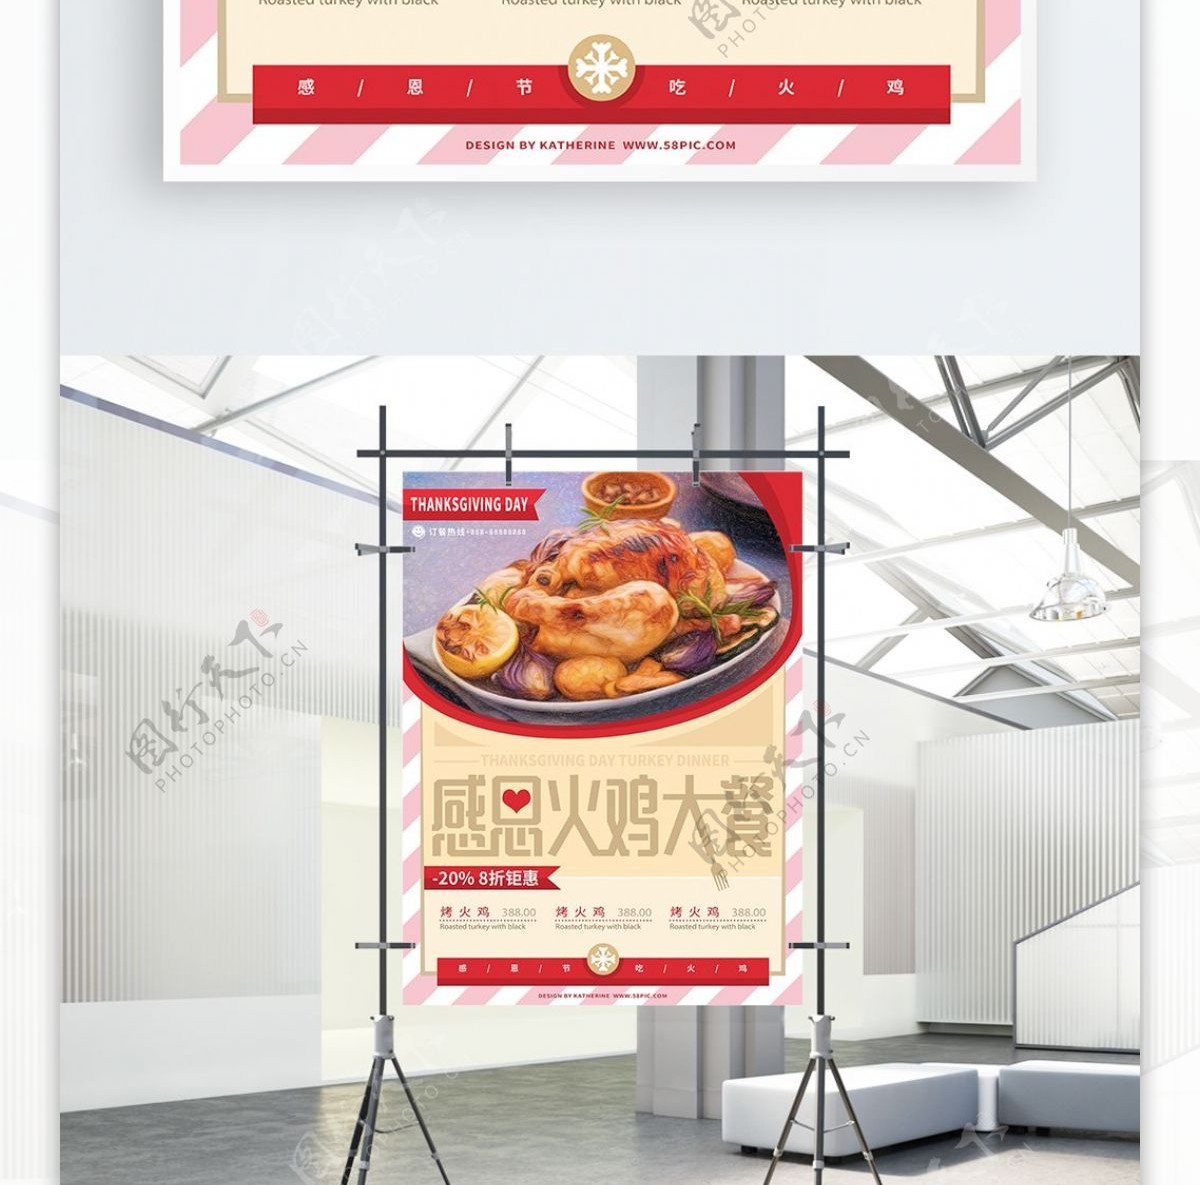 原创手绘火鸡大餐感恩节促销美食商业海报